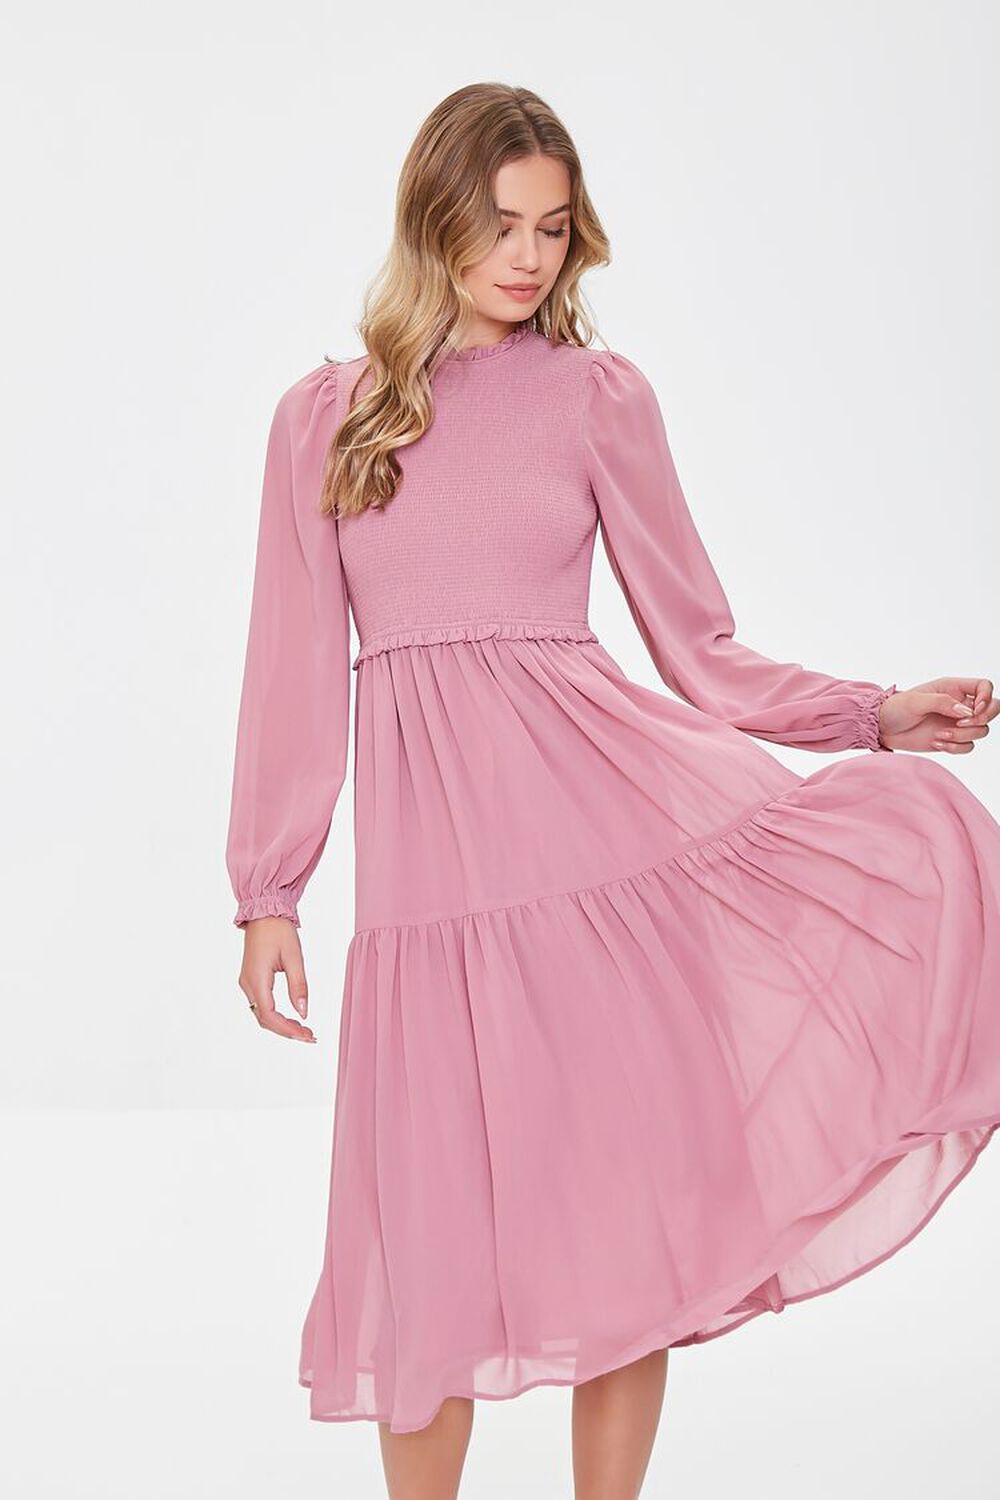 MAUVE Smocked Peasant-Sleeve Dress, image 1